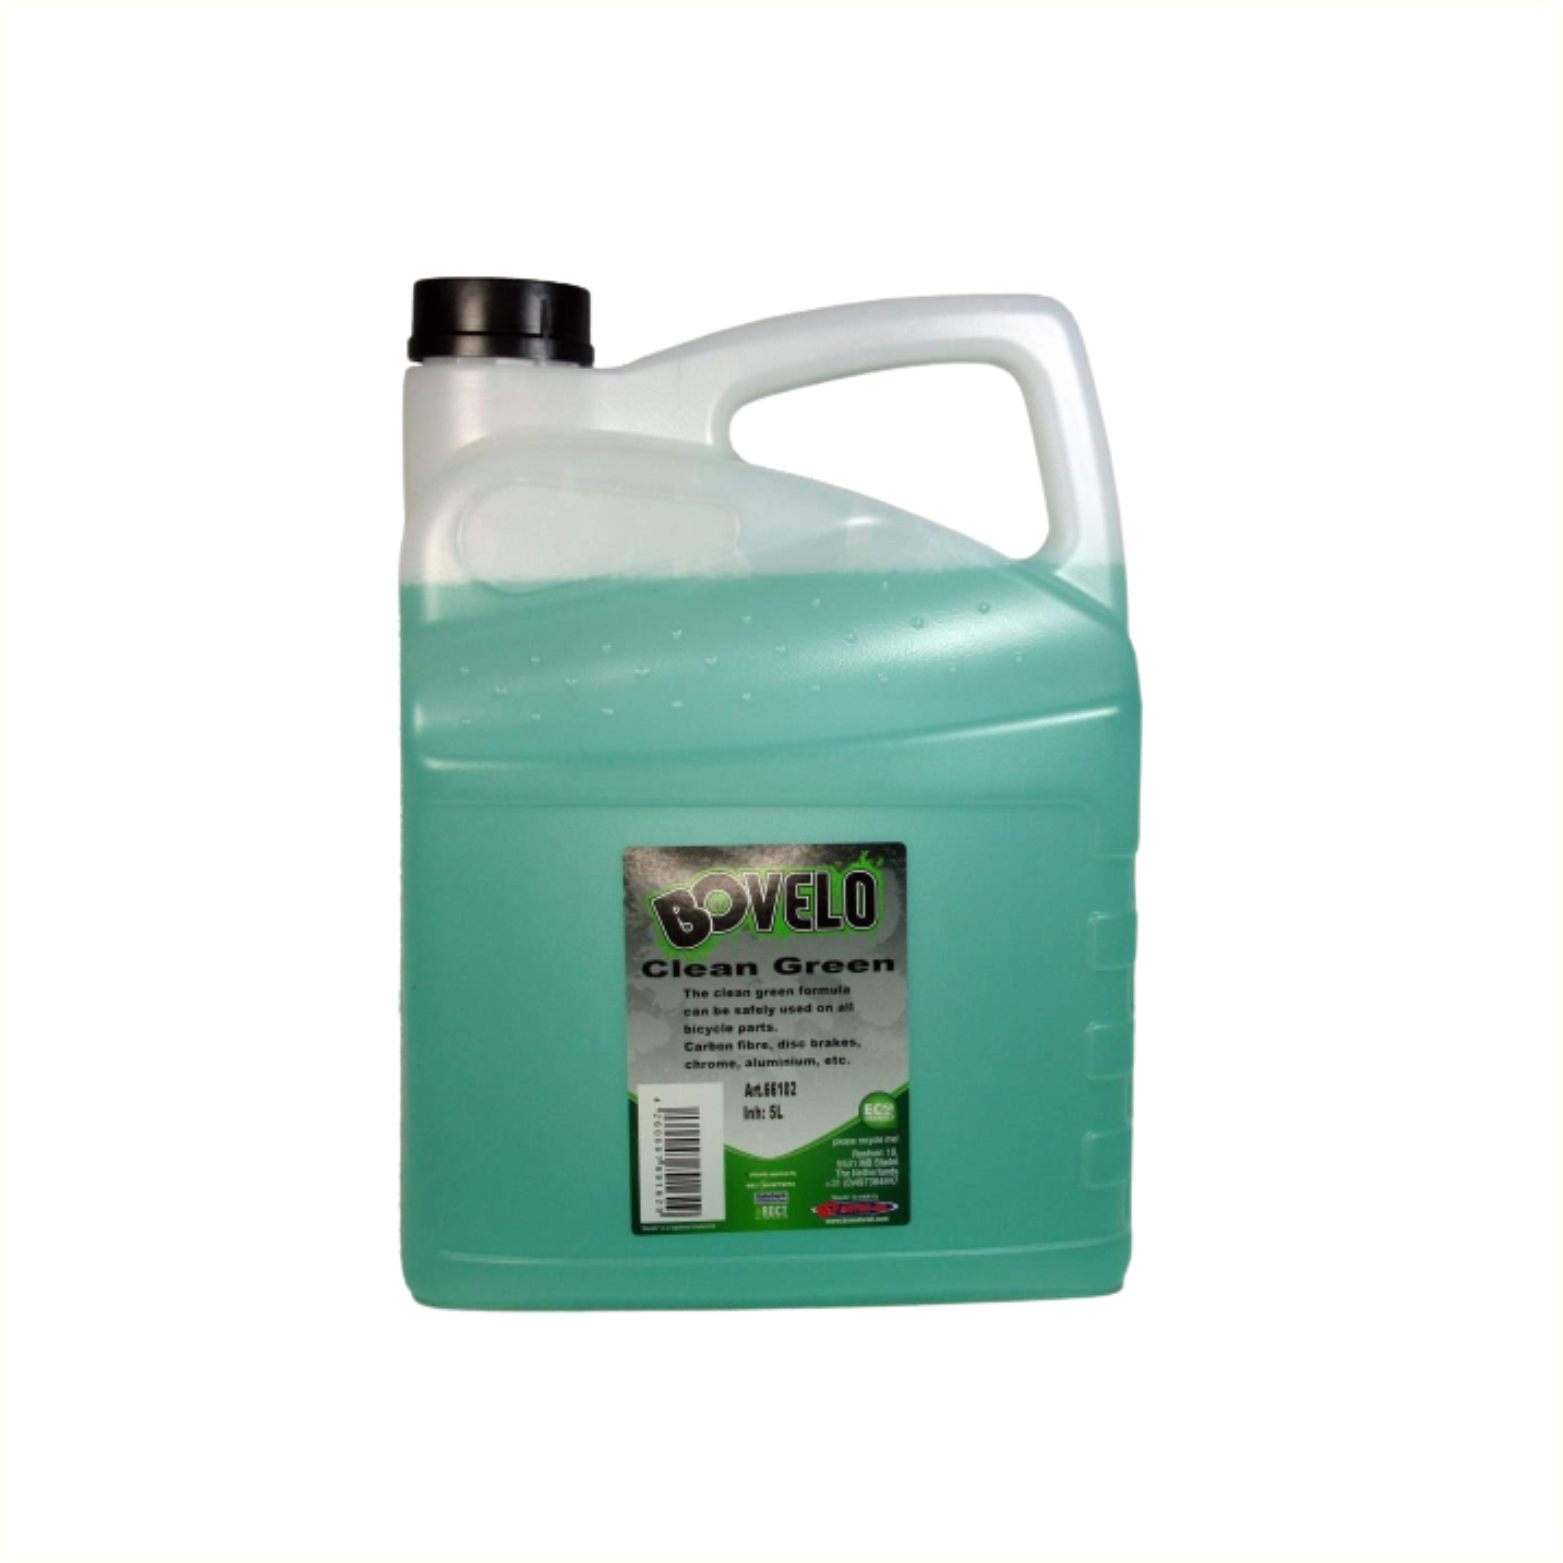 BOVelo Clean Green 5L, reinigingsmiddel geschikt voor het schoonmaken ontvetten van diverse delen